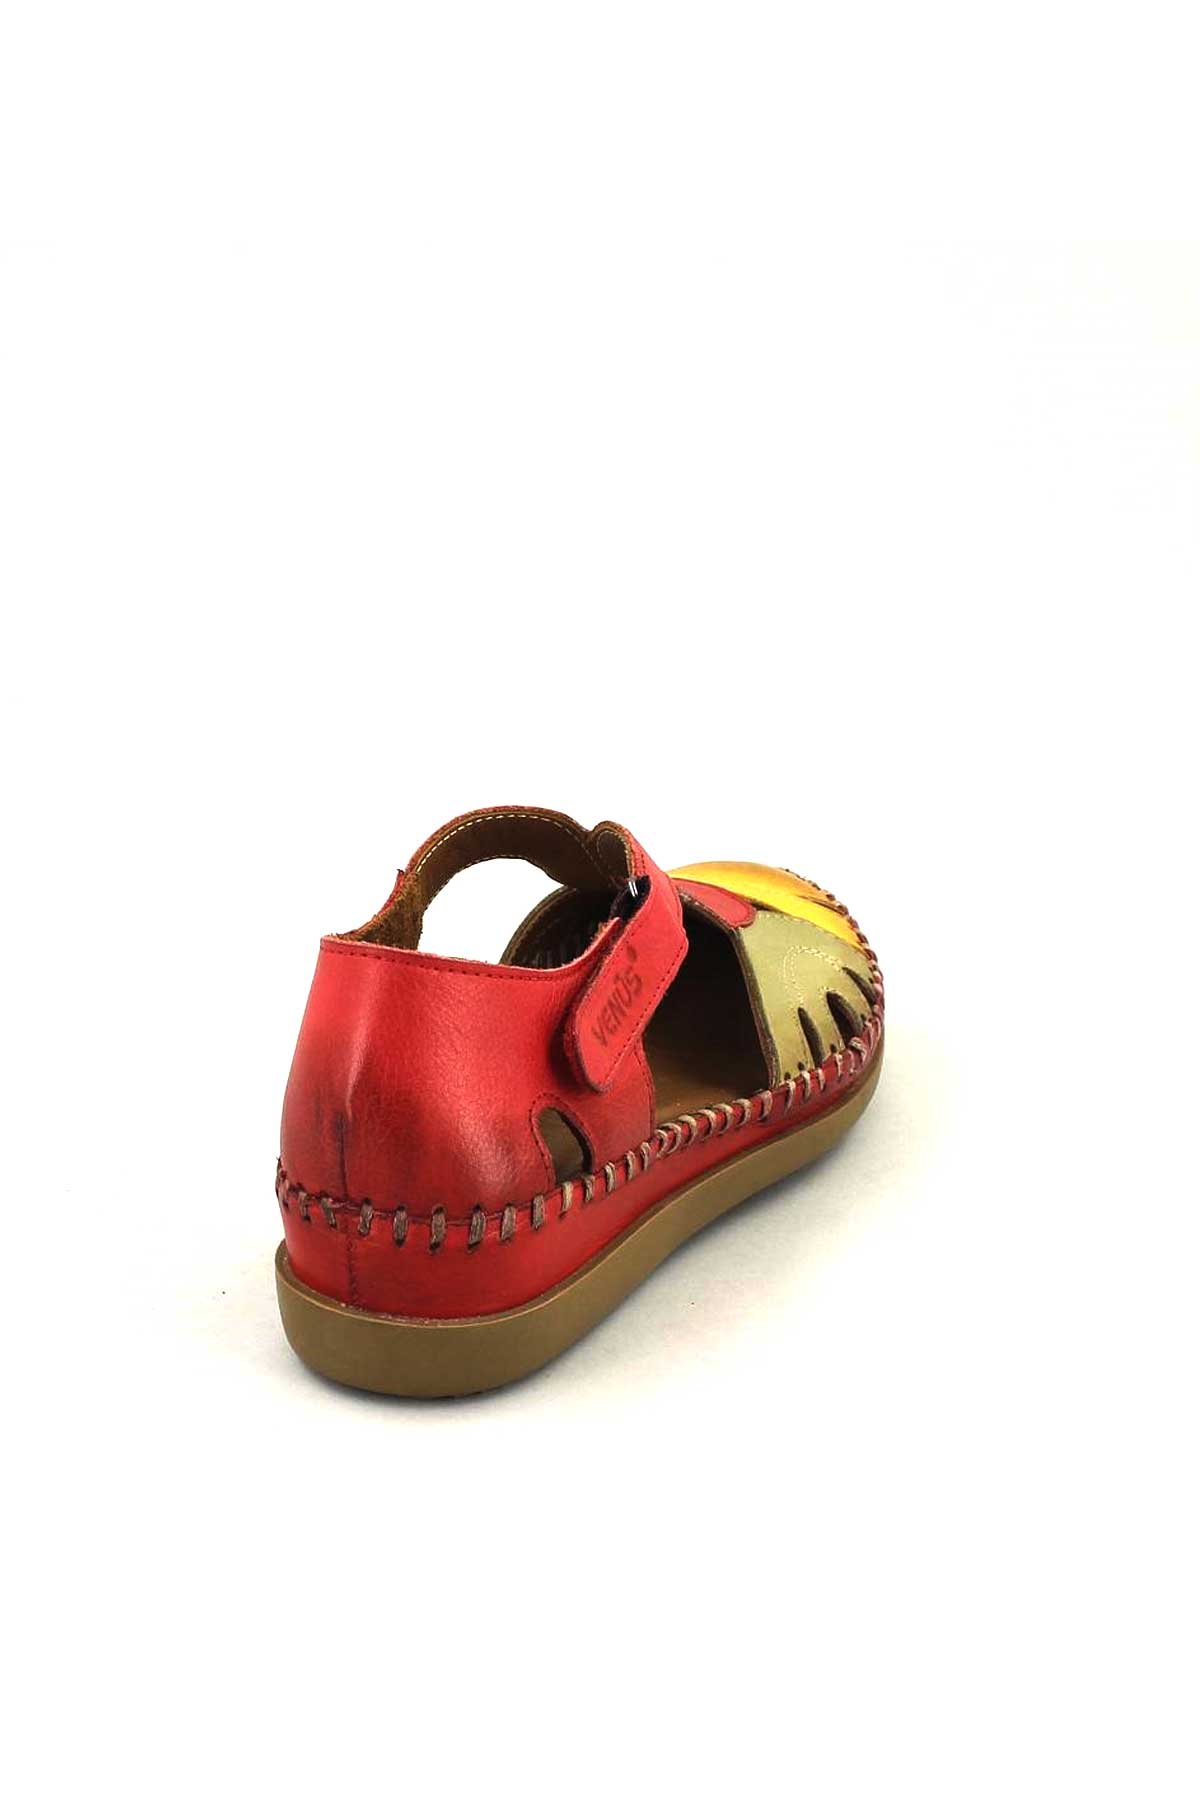 Kadın Comfort Sandalet Kırmızı 18793502 - Thumbnail